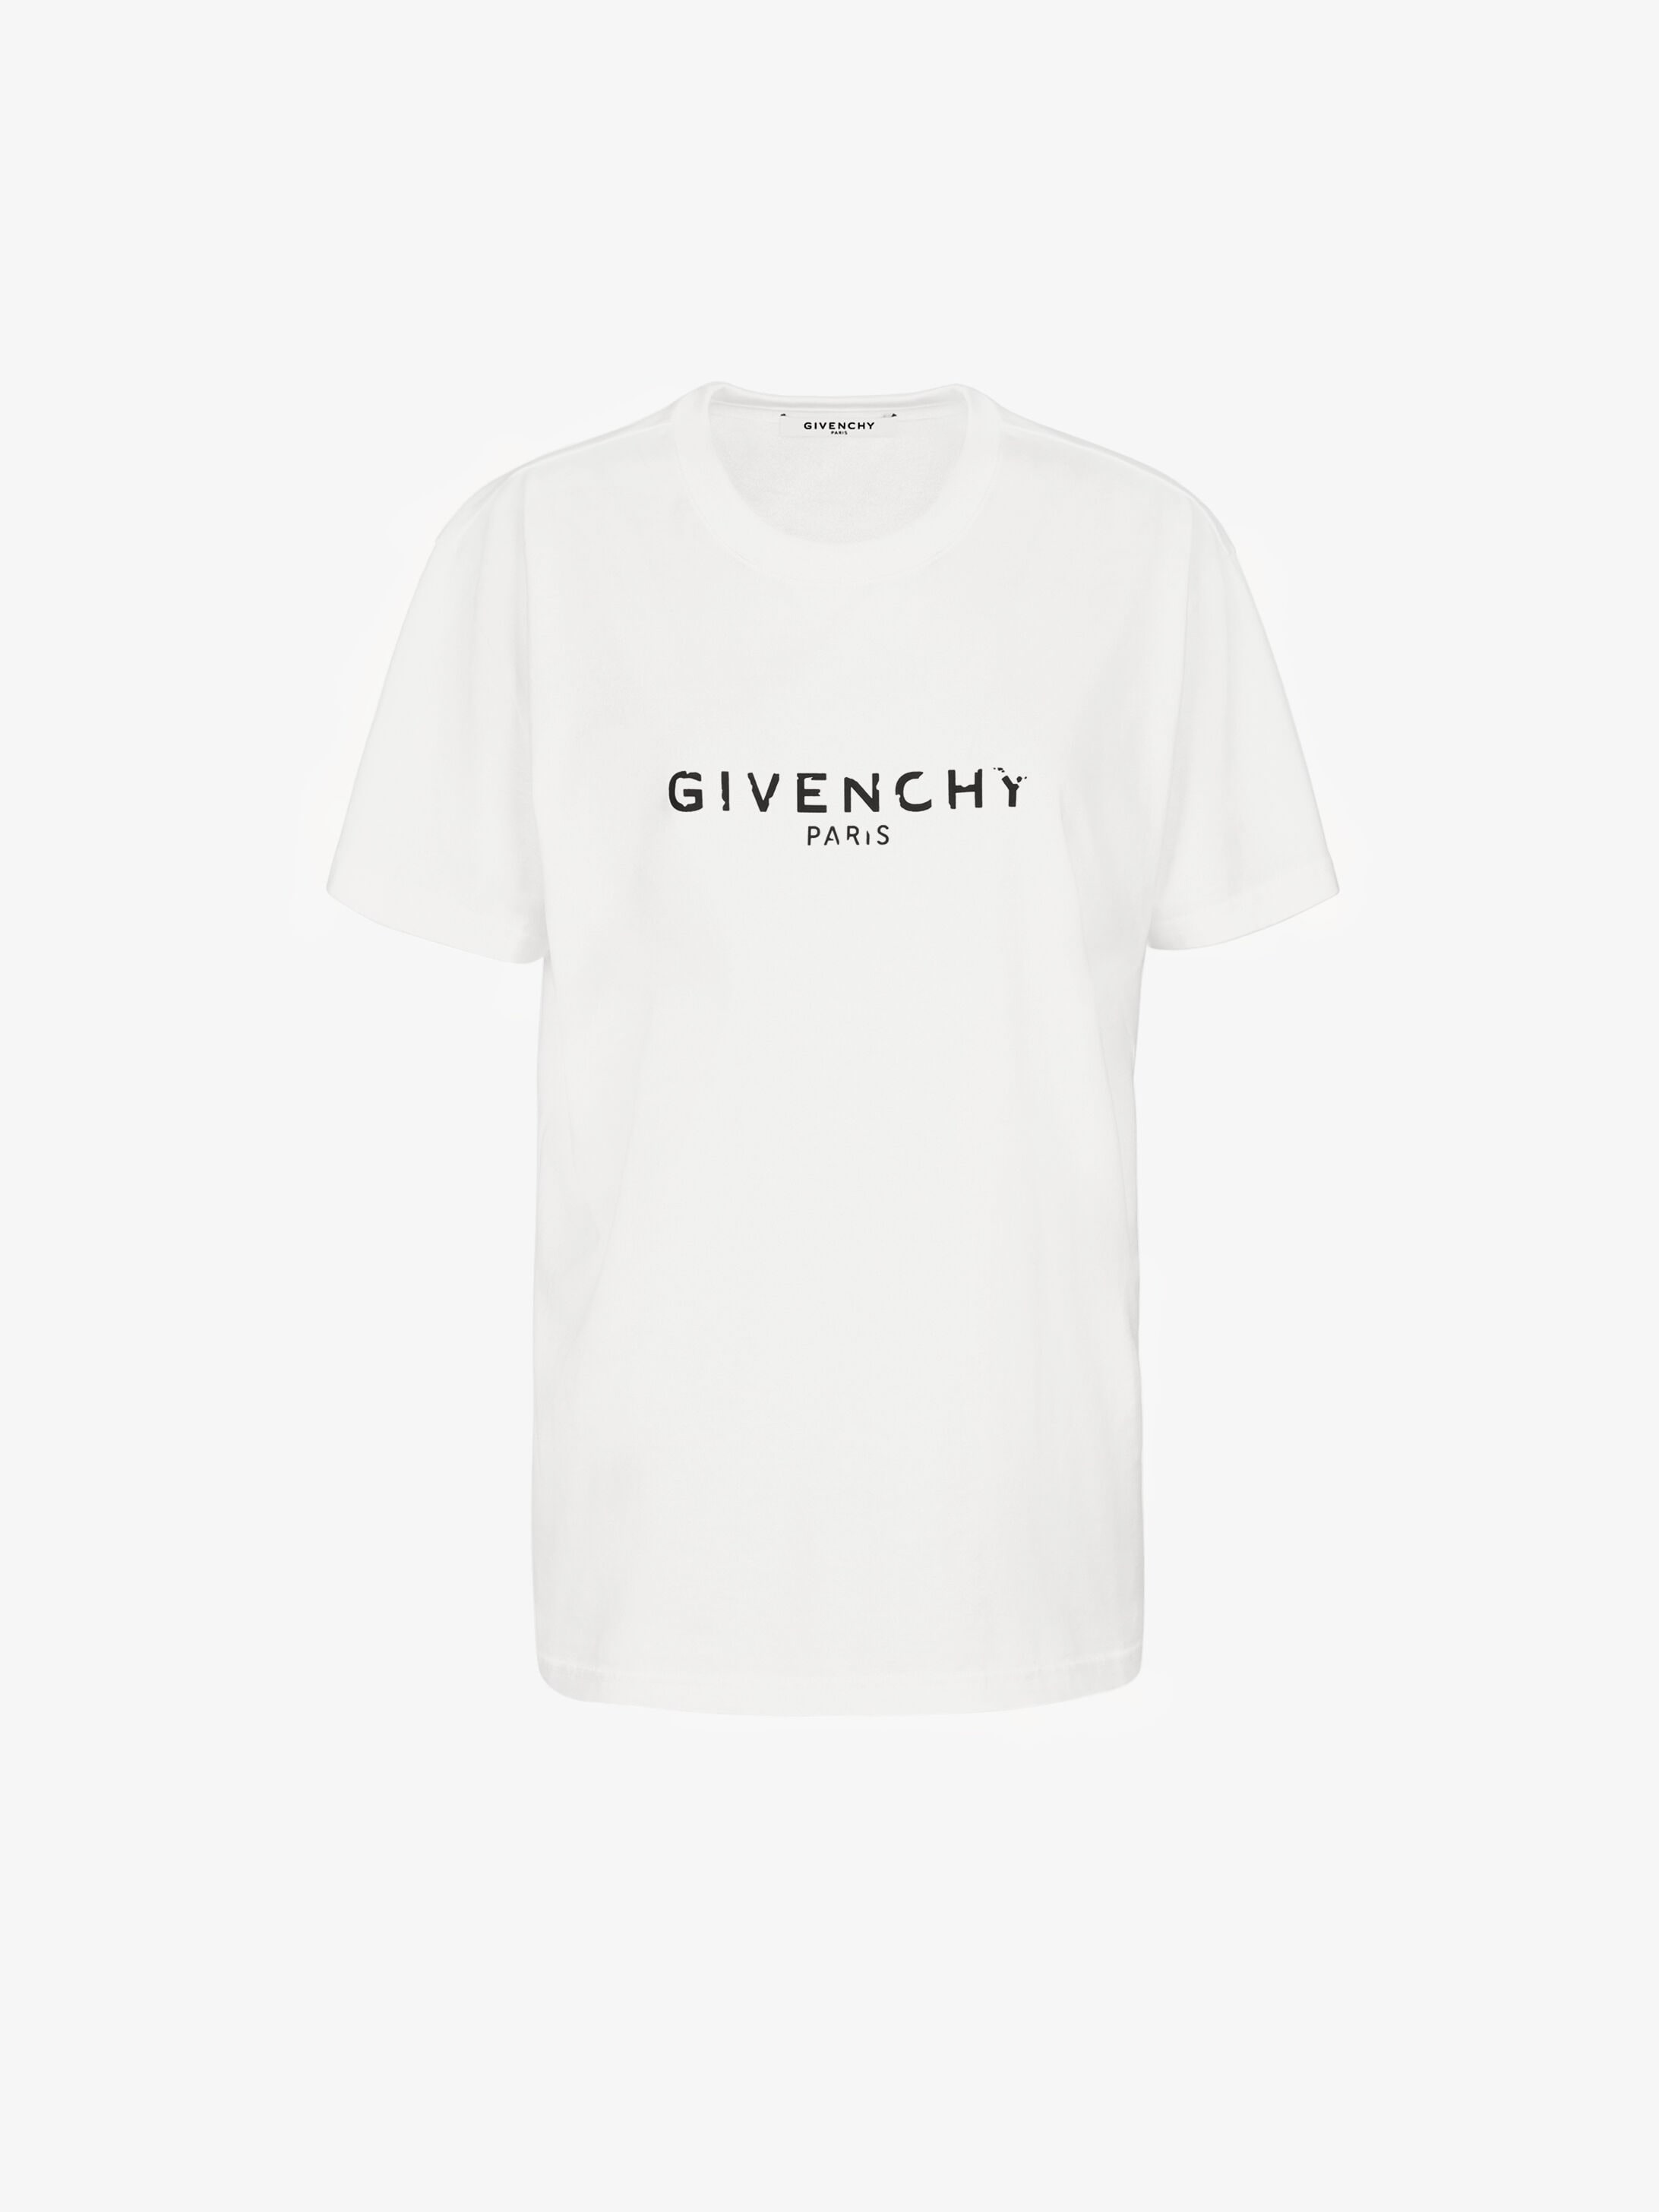 givenchy t shirt 2019